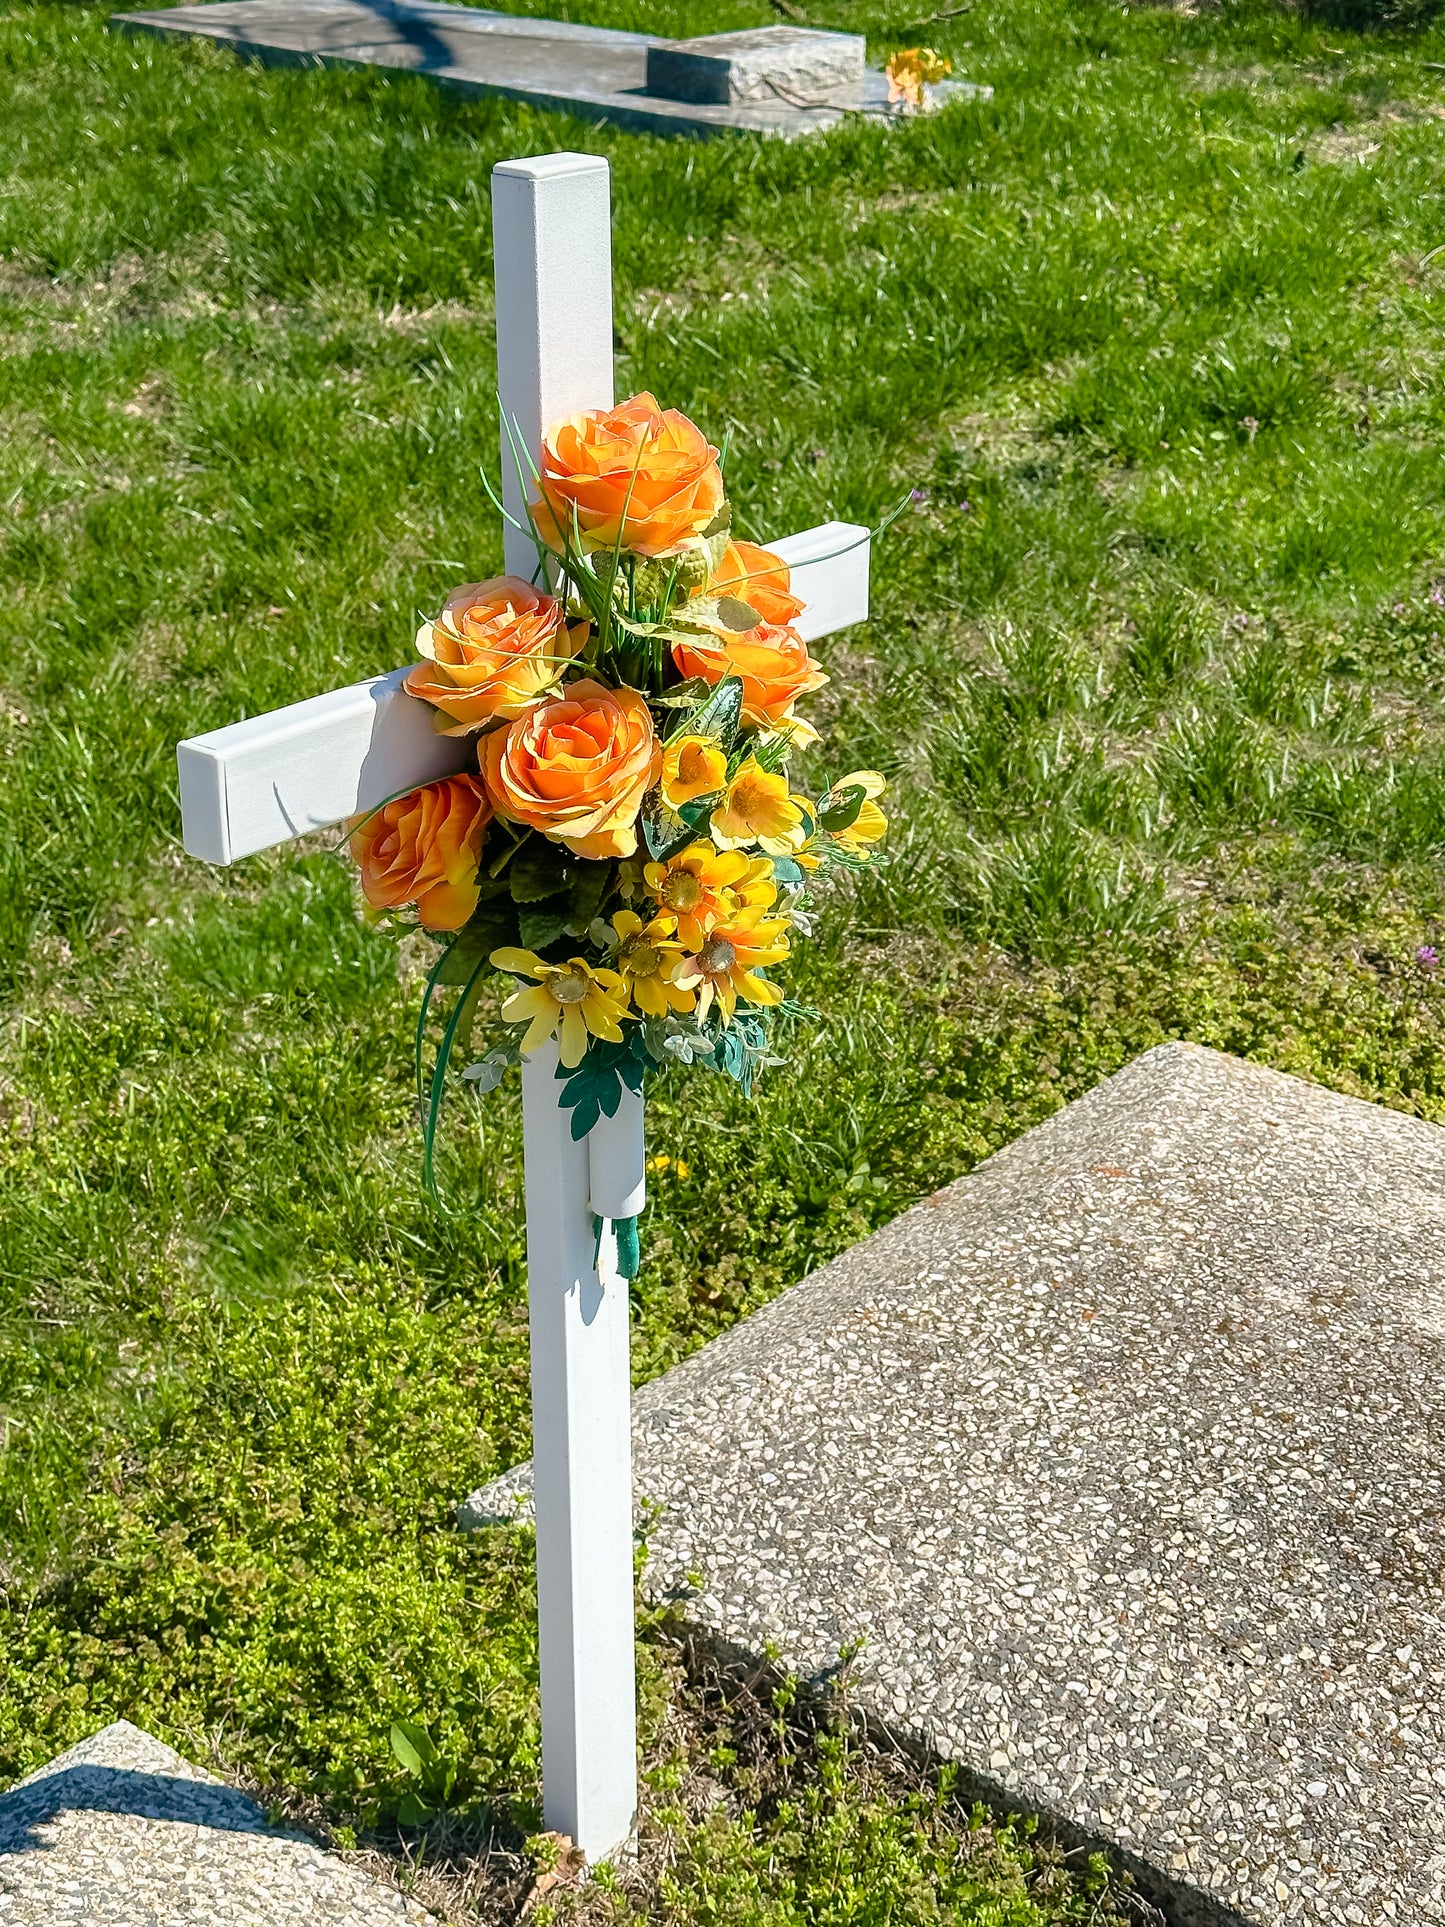 The Woodhaven Memorial Crosses